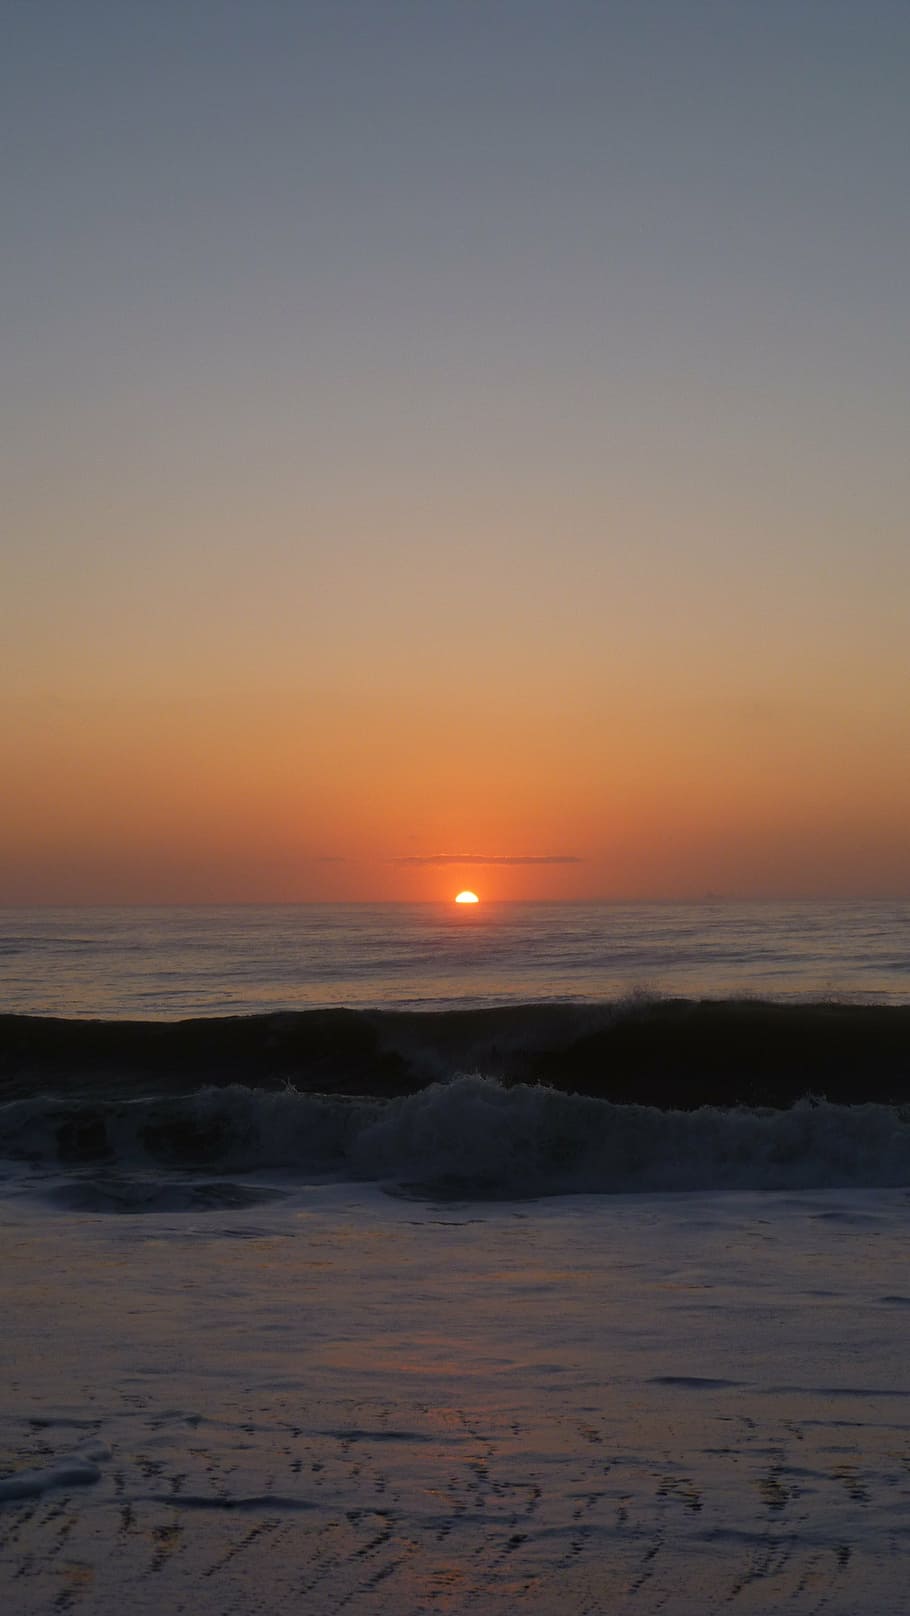 matahari terbit, matahari terbenam, sinar matahari, fajar, senja, horison, pagi, indah, pantai, matahari